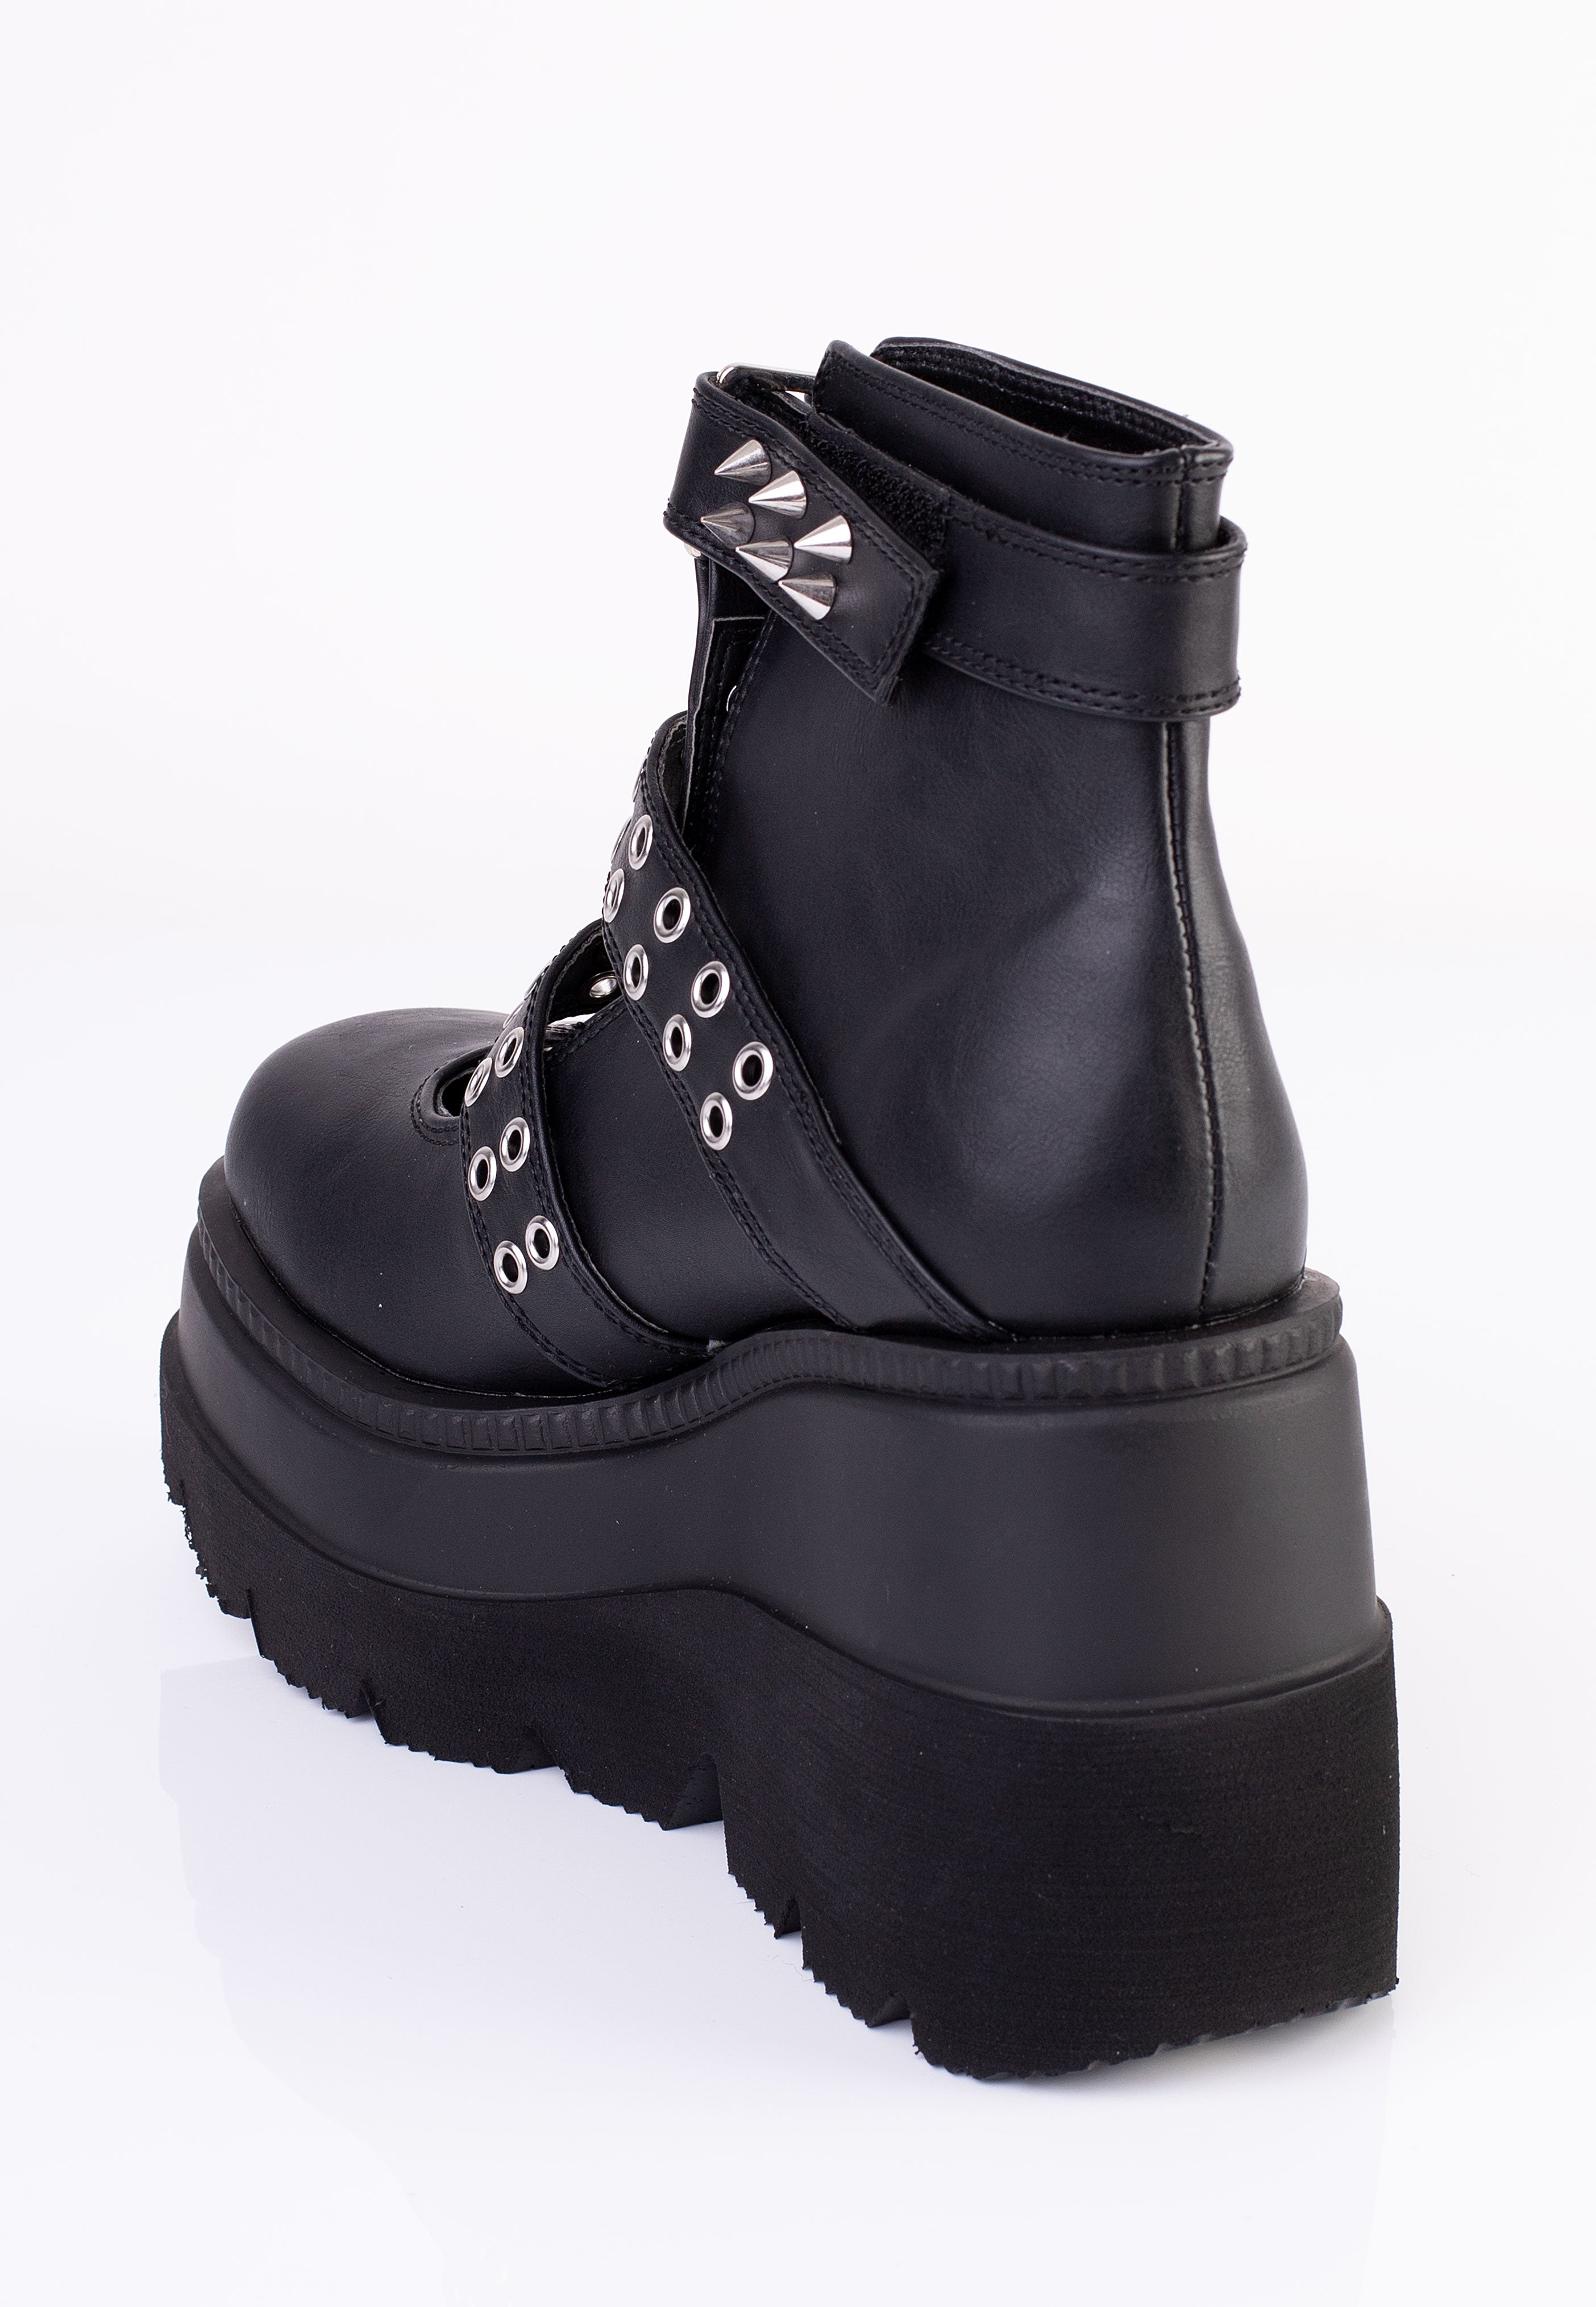 DemoniaCult - Shaker 62 Black Vegan Leather - Girl Shoes